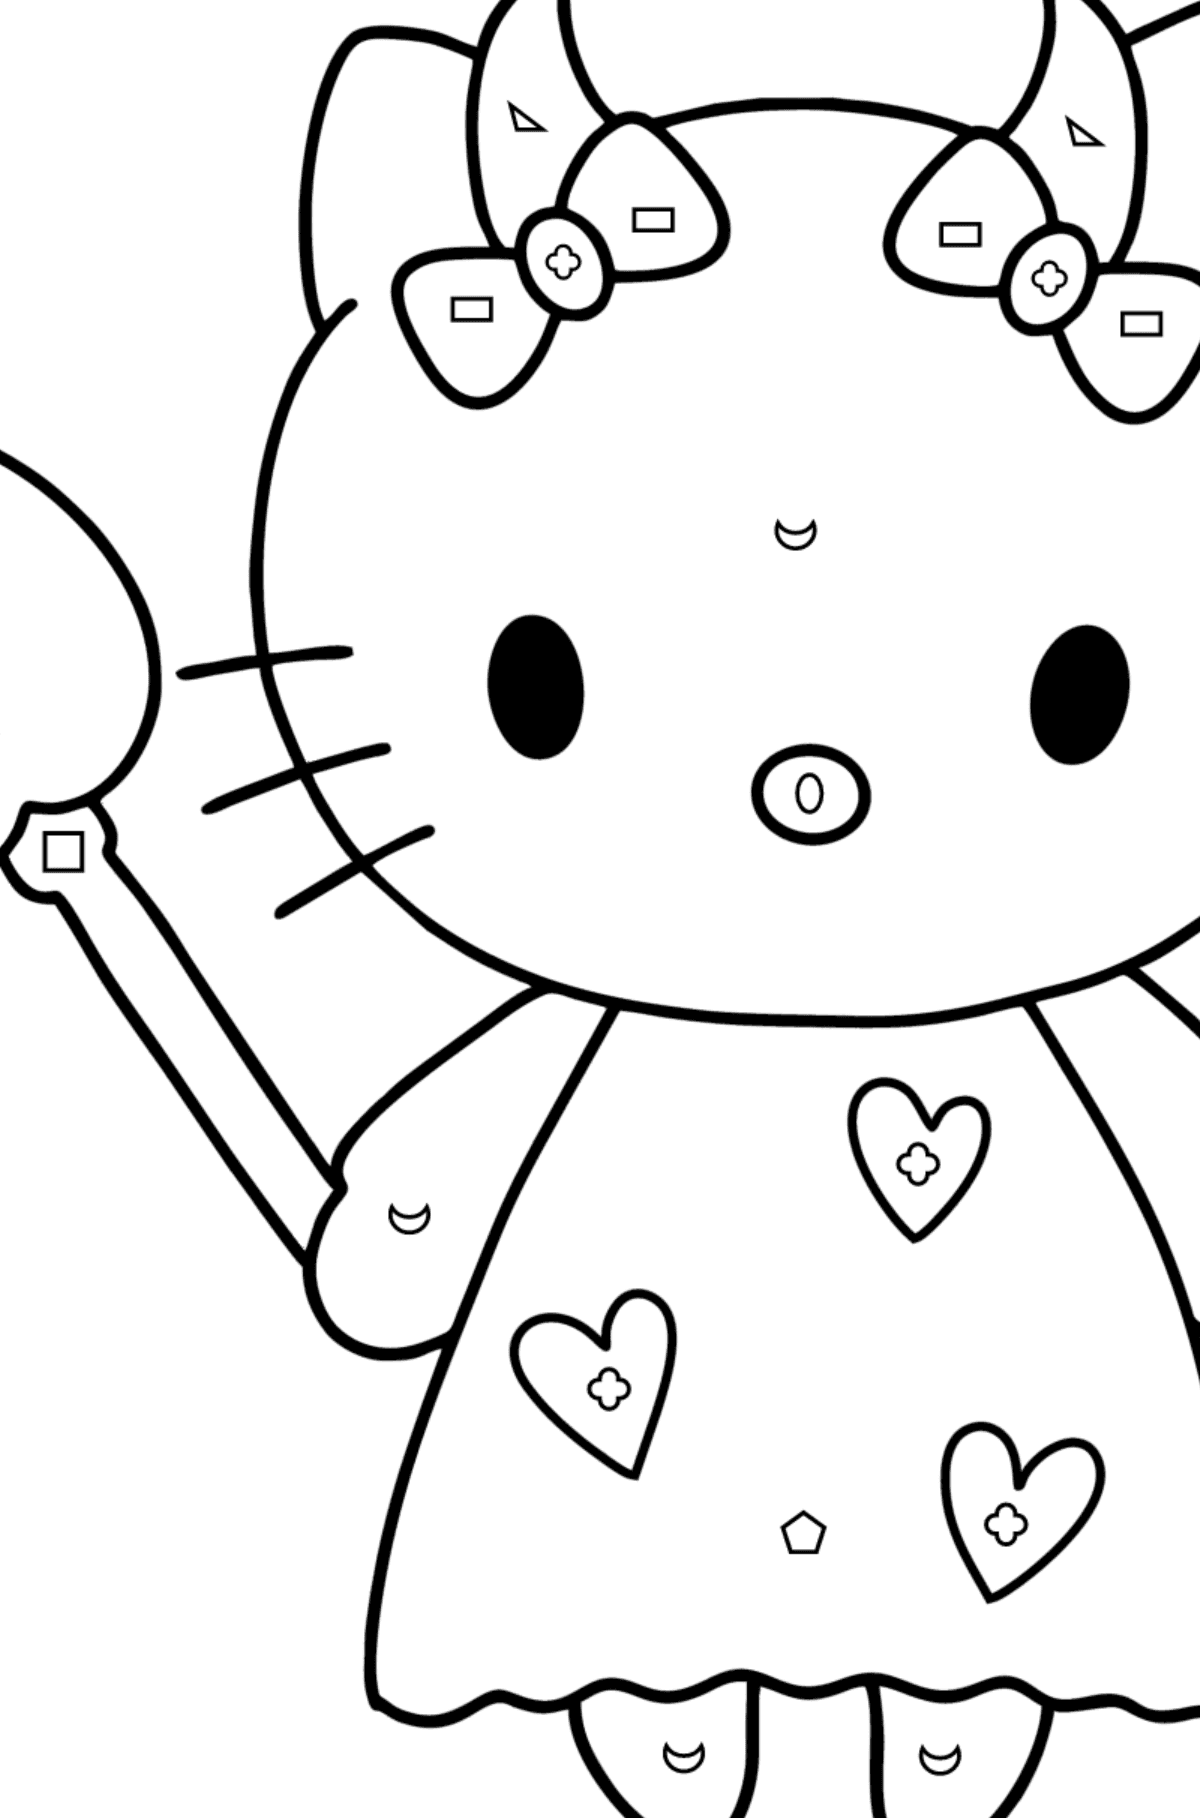 Boyama sayfası Hello Kitty şeytan - Geometrik Şekillerle Boyama çocuklar için